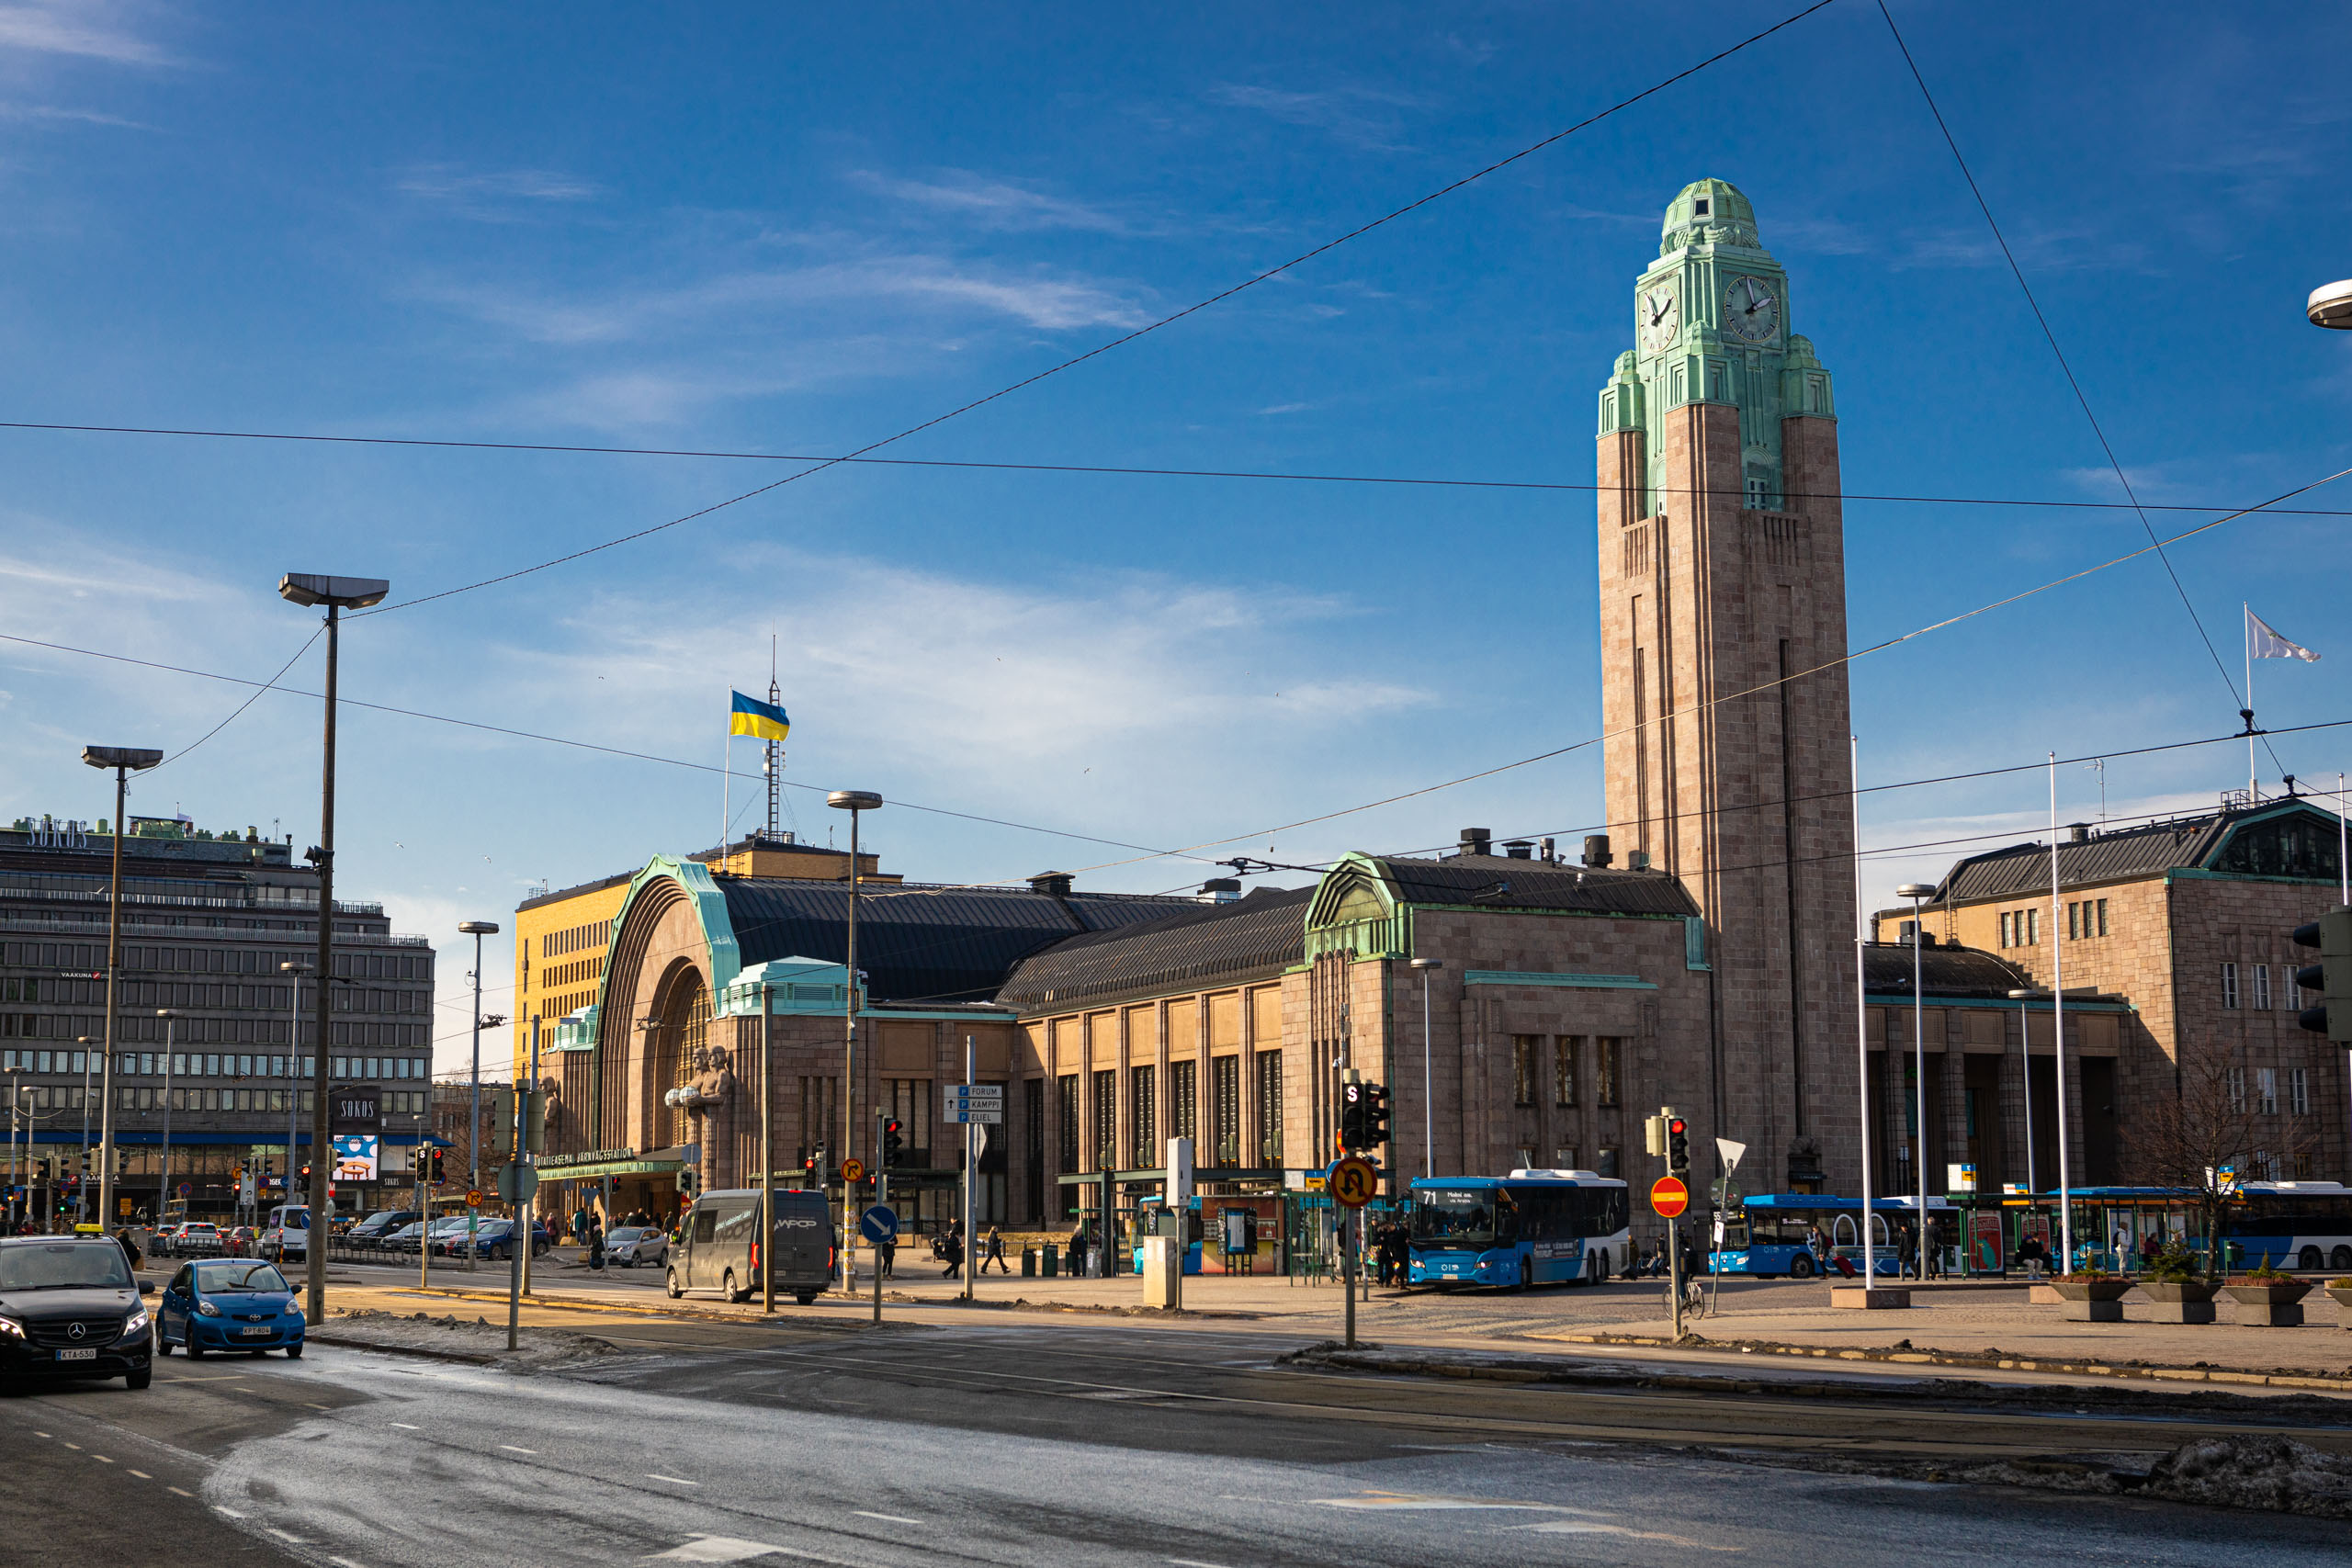 Het treinstation van Helsinki tegen een blauwe lucht, met hoge toren